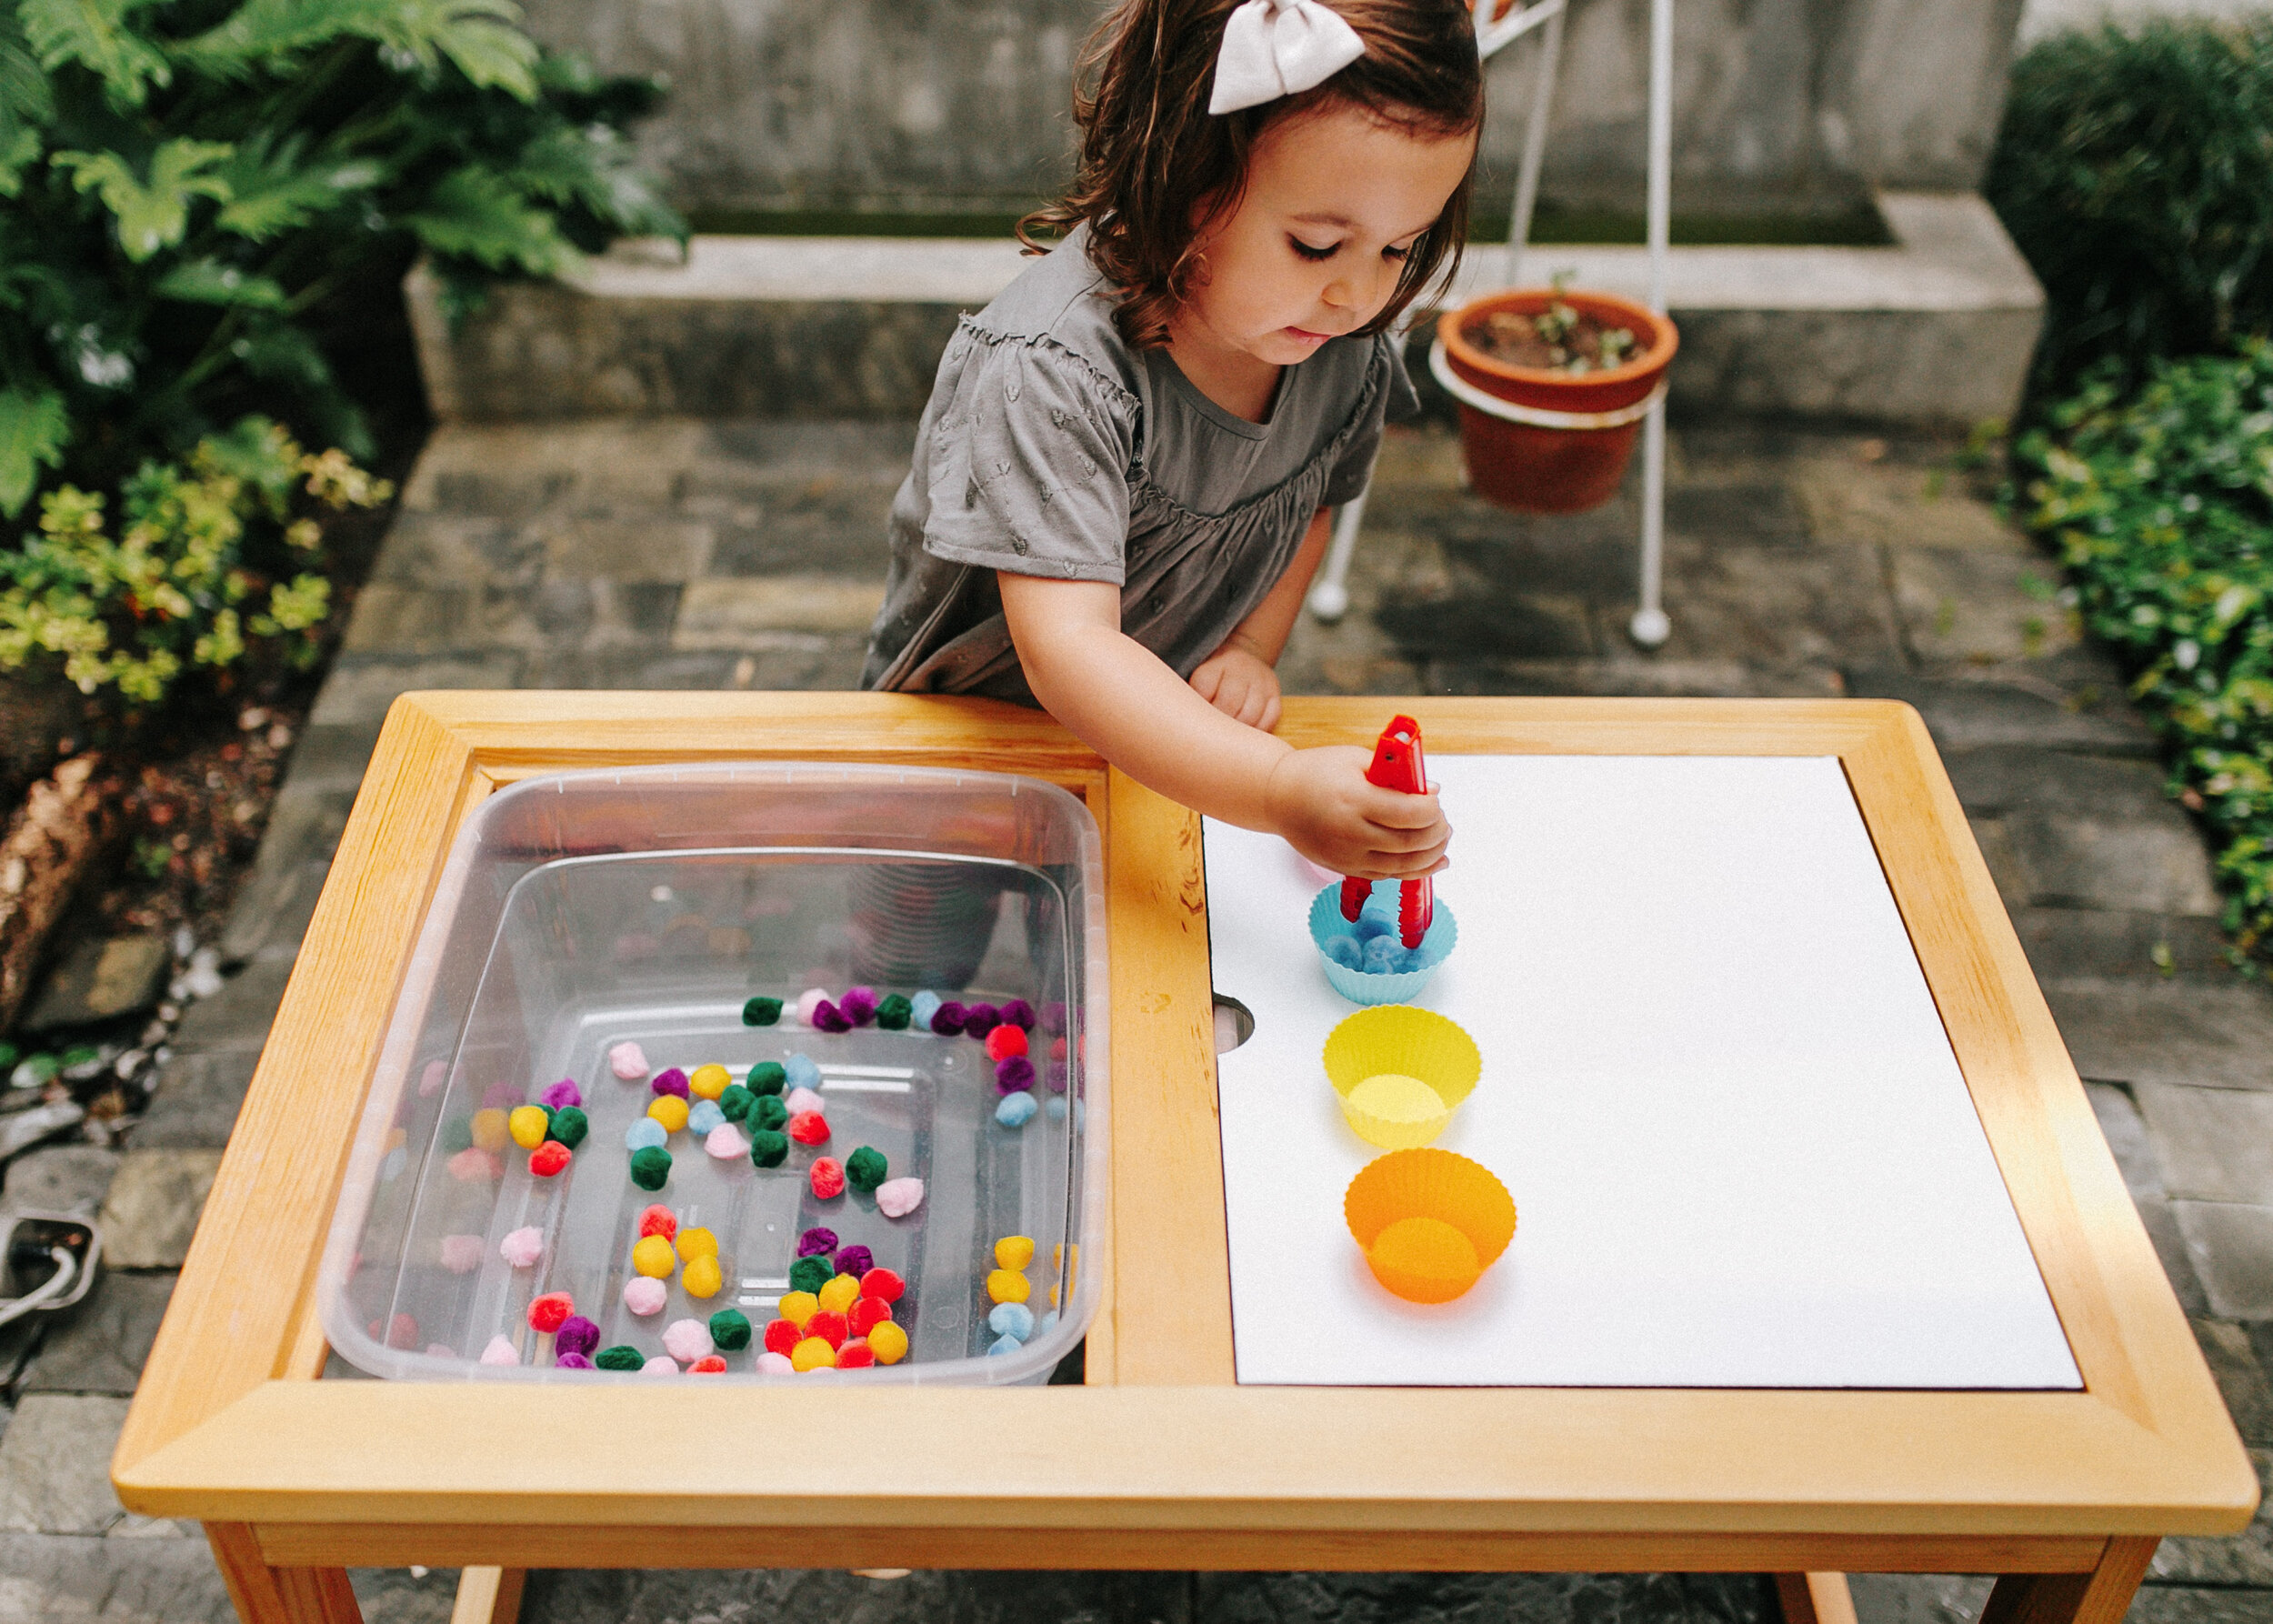 PLAYMAKER CO.™ Mesa sensorial – Mesa de actividades de interior para niños,  mesa sensorial para niños pequeños de 1 a 3 años y juegos de arena – Mesa